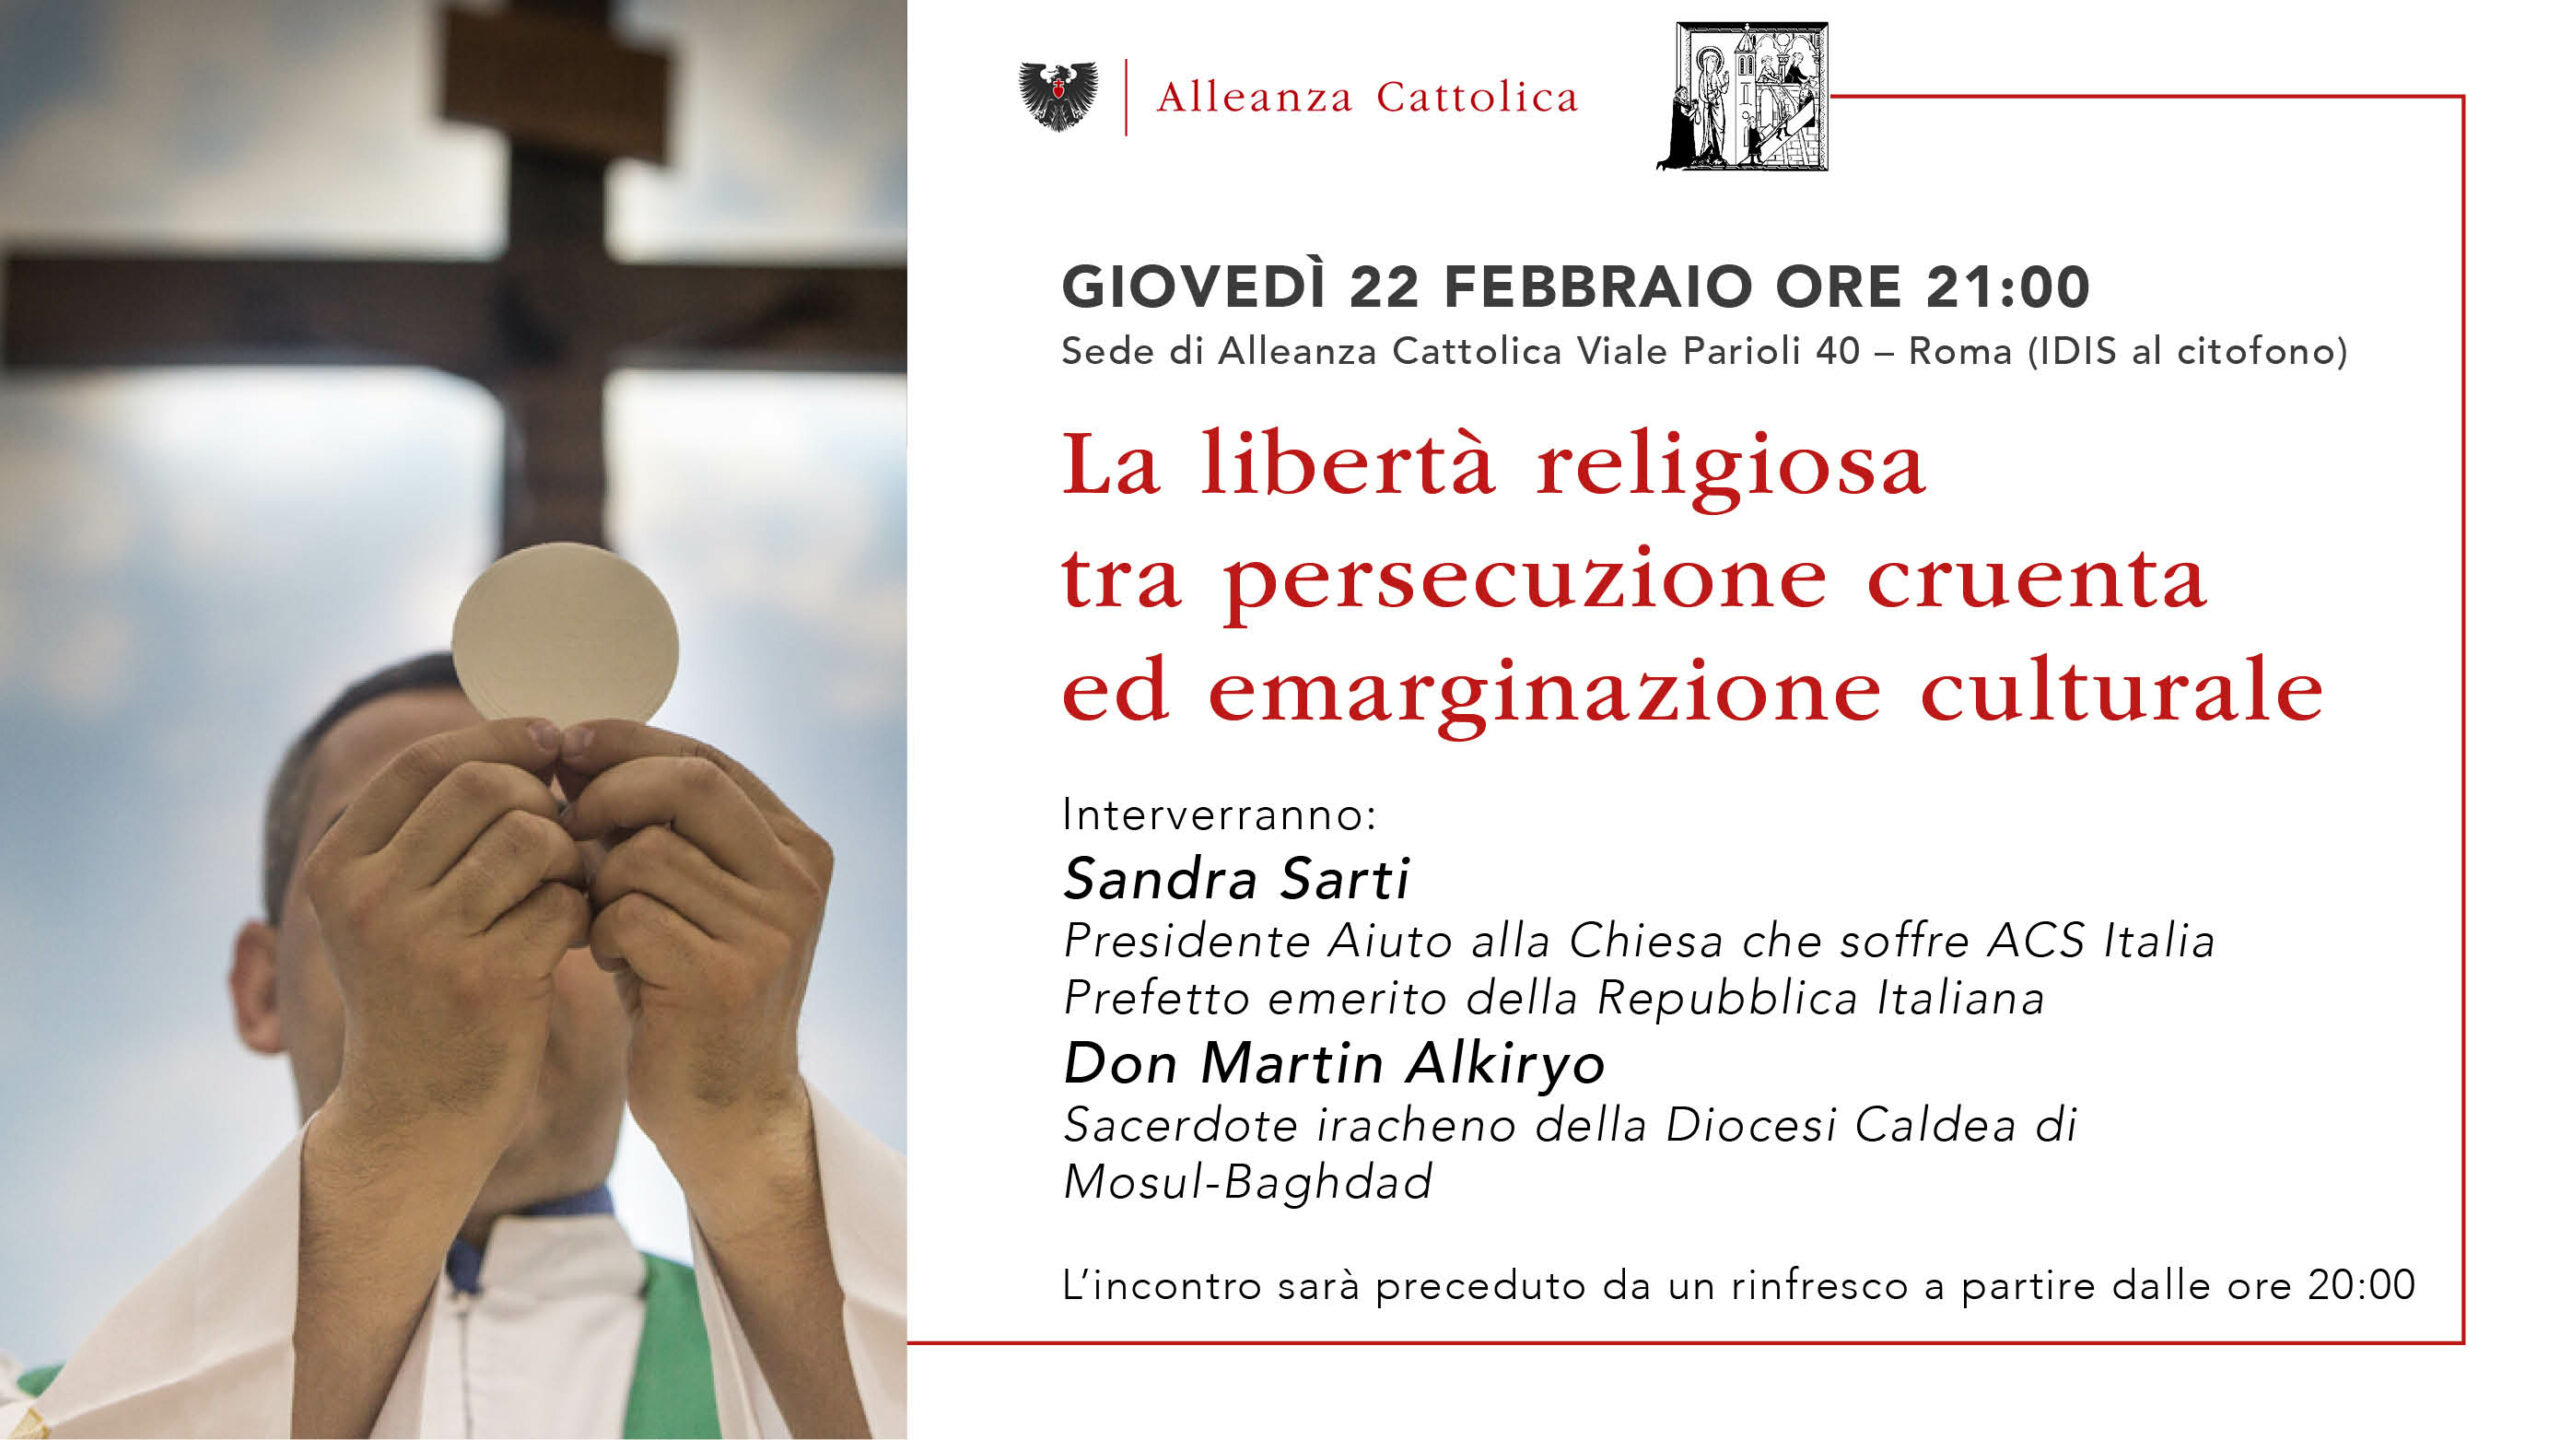 Giovedì 22 febbraio - Sede di Alleanza Cattolica Roma - La libertà religiosa tra persecuzione cruenta ed emarginazione culturale